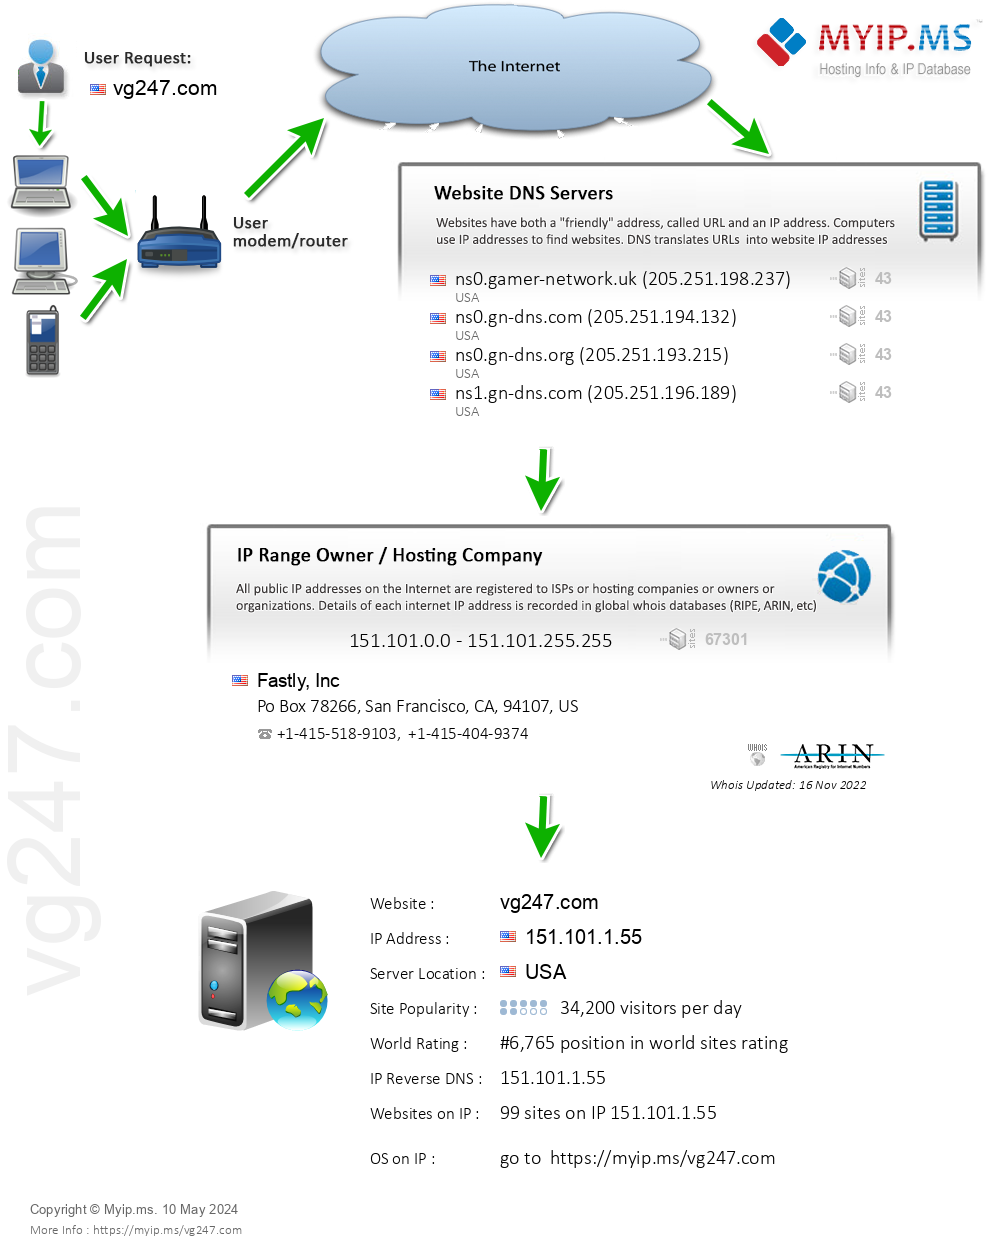 Vg247.com - Website Hosting Visual IP Diagram